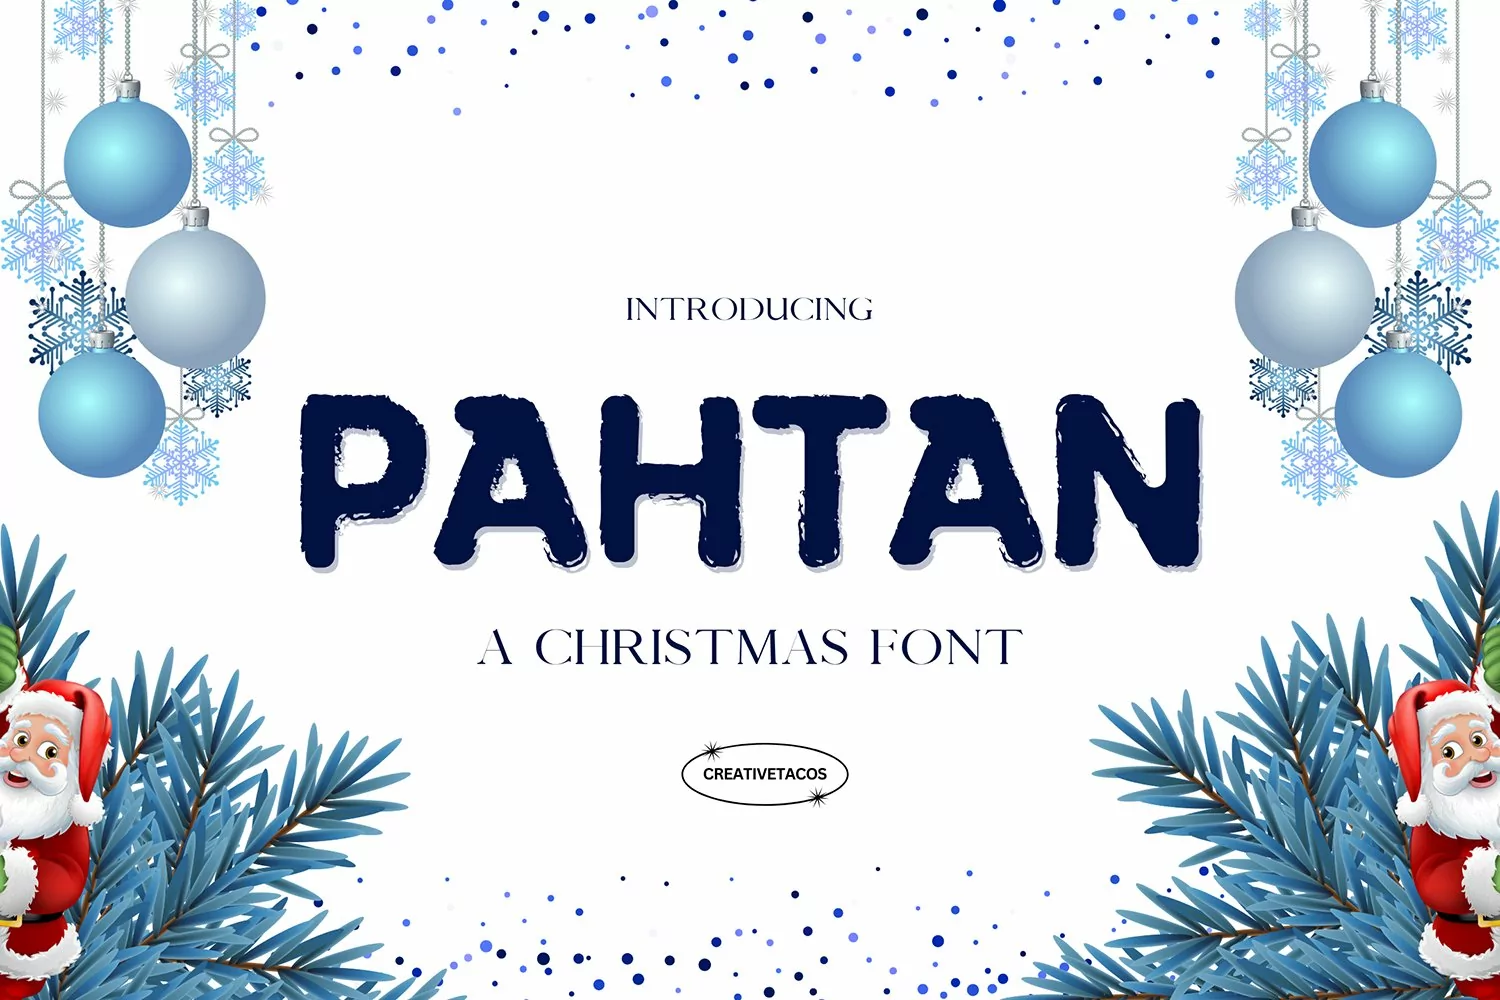 Pahtan Christmas Font